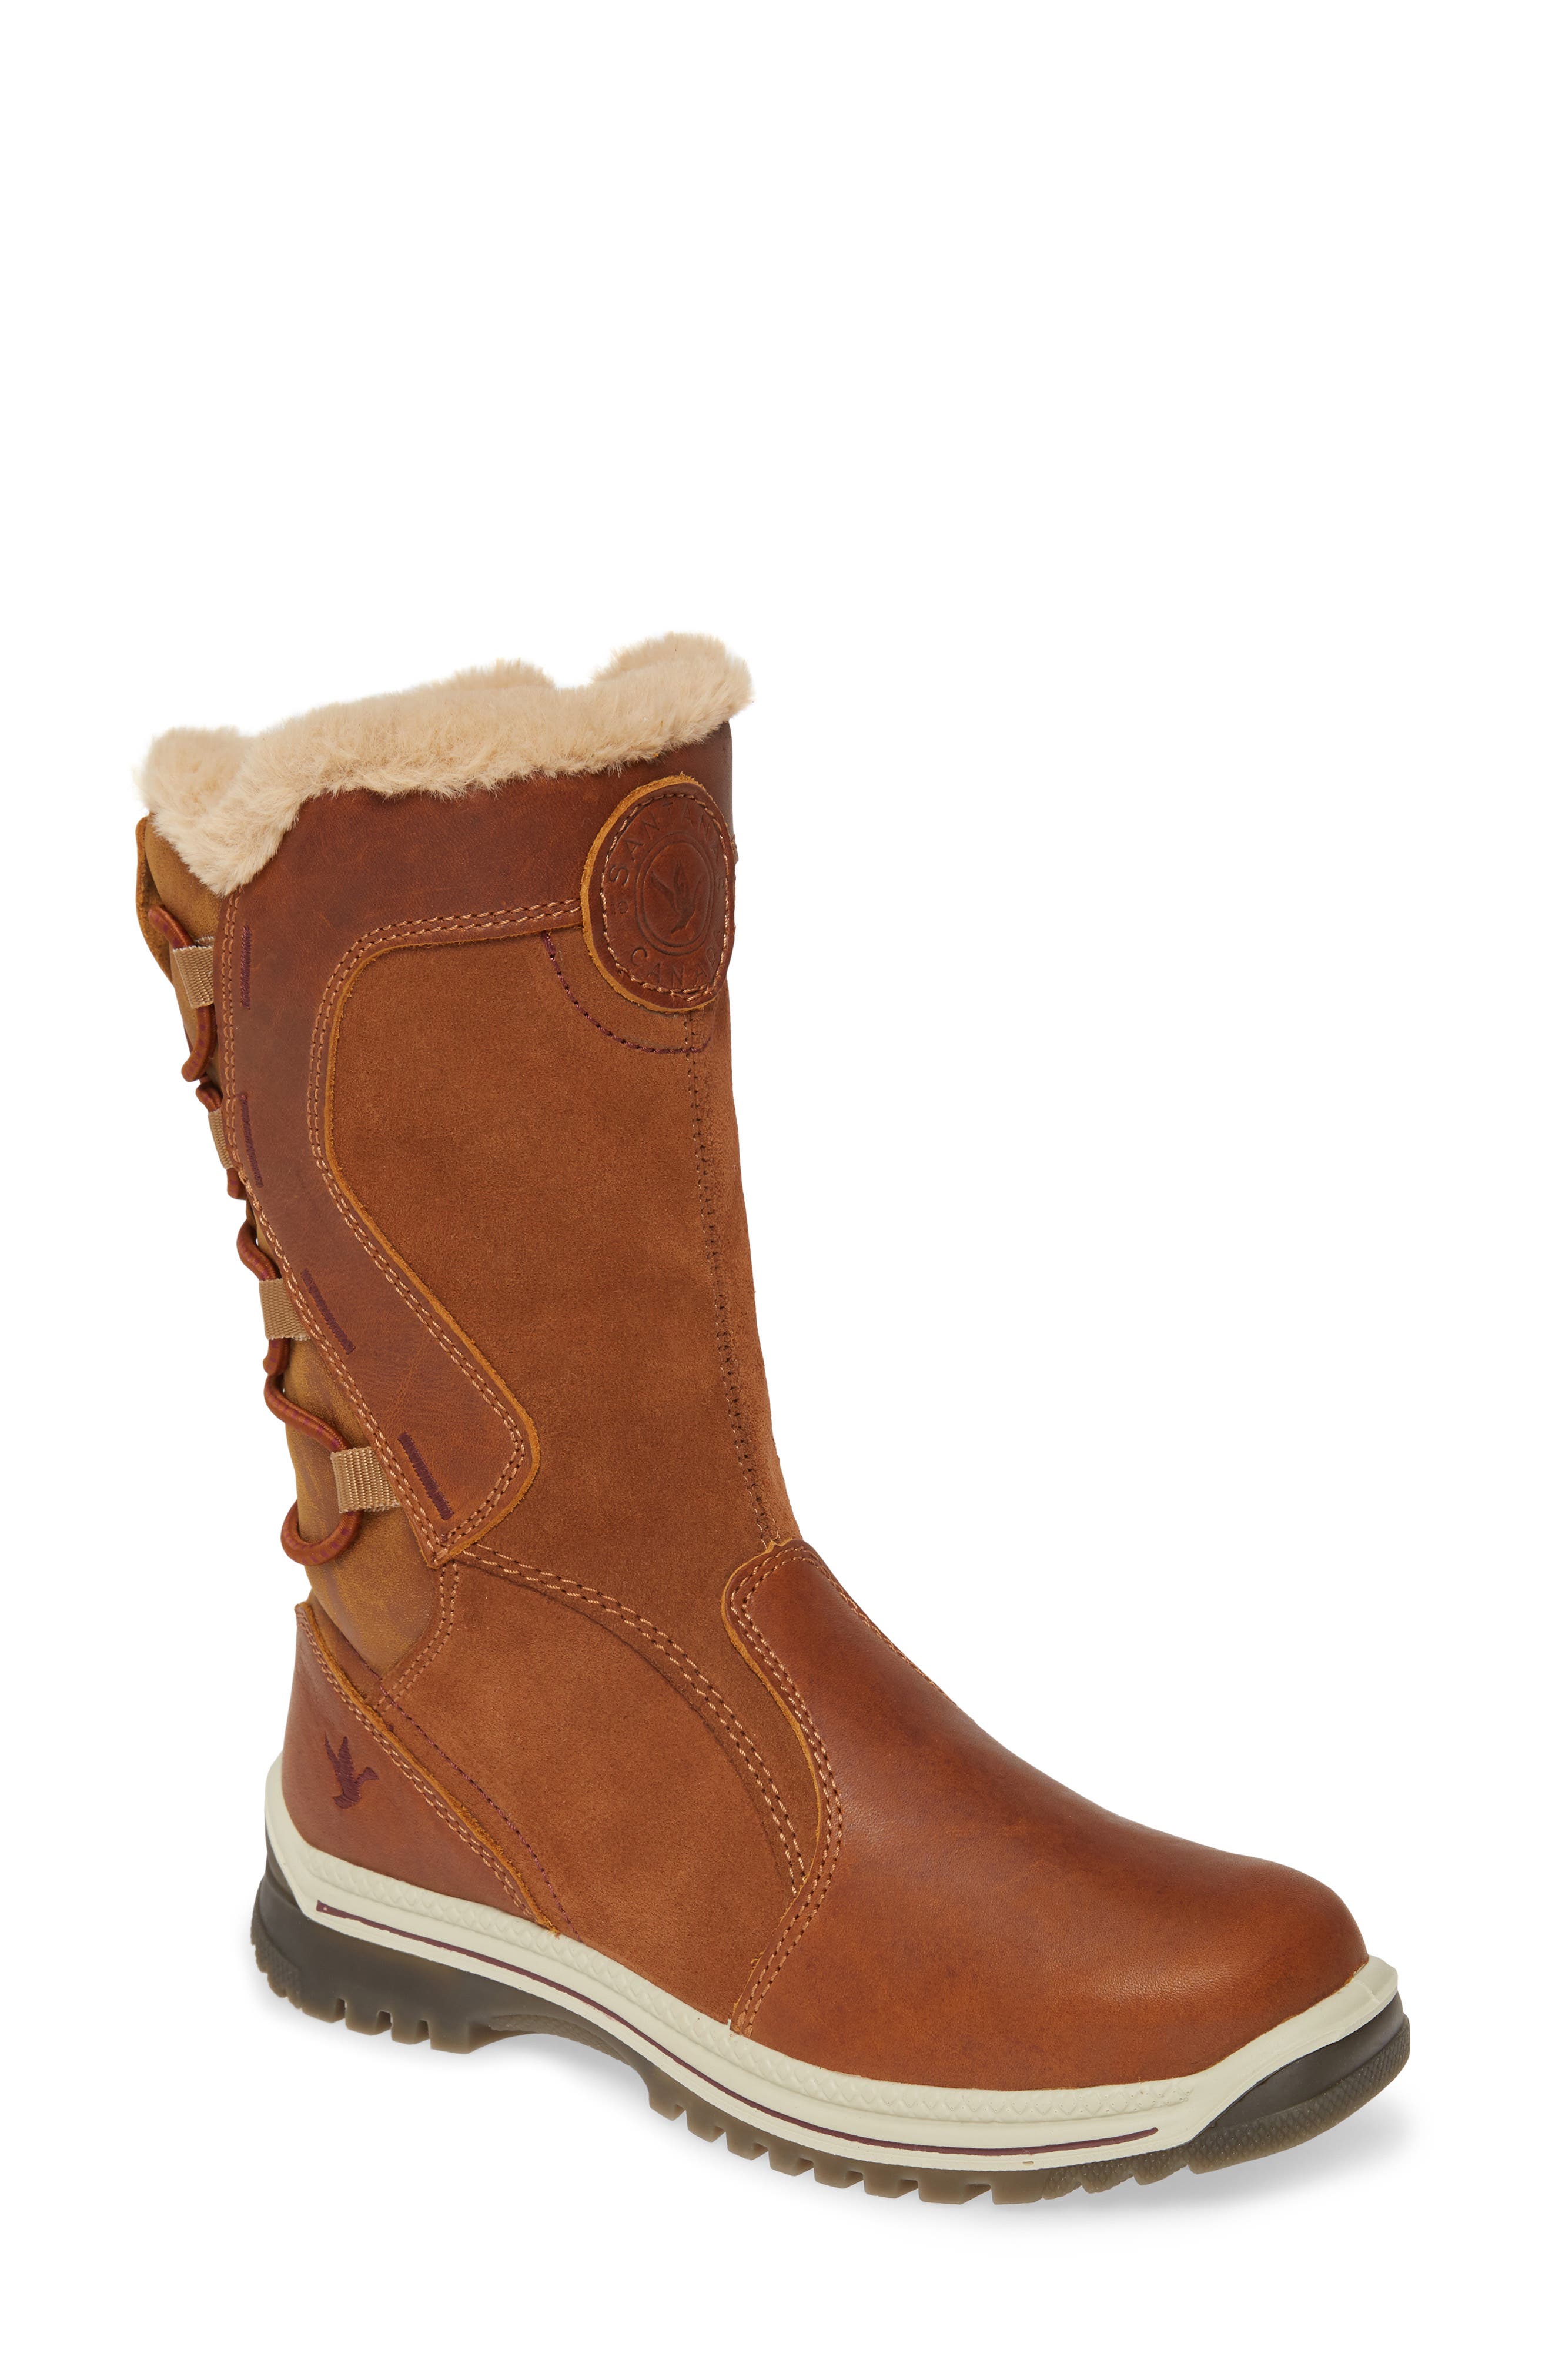 santana canada leather boots